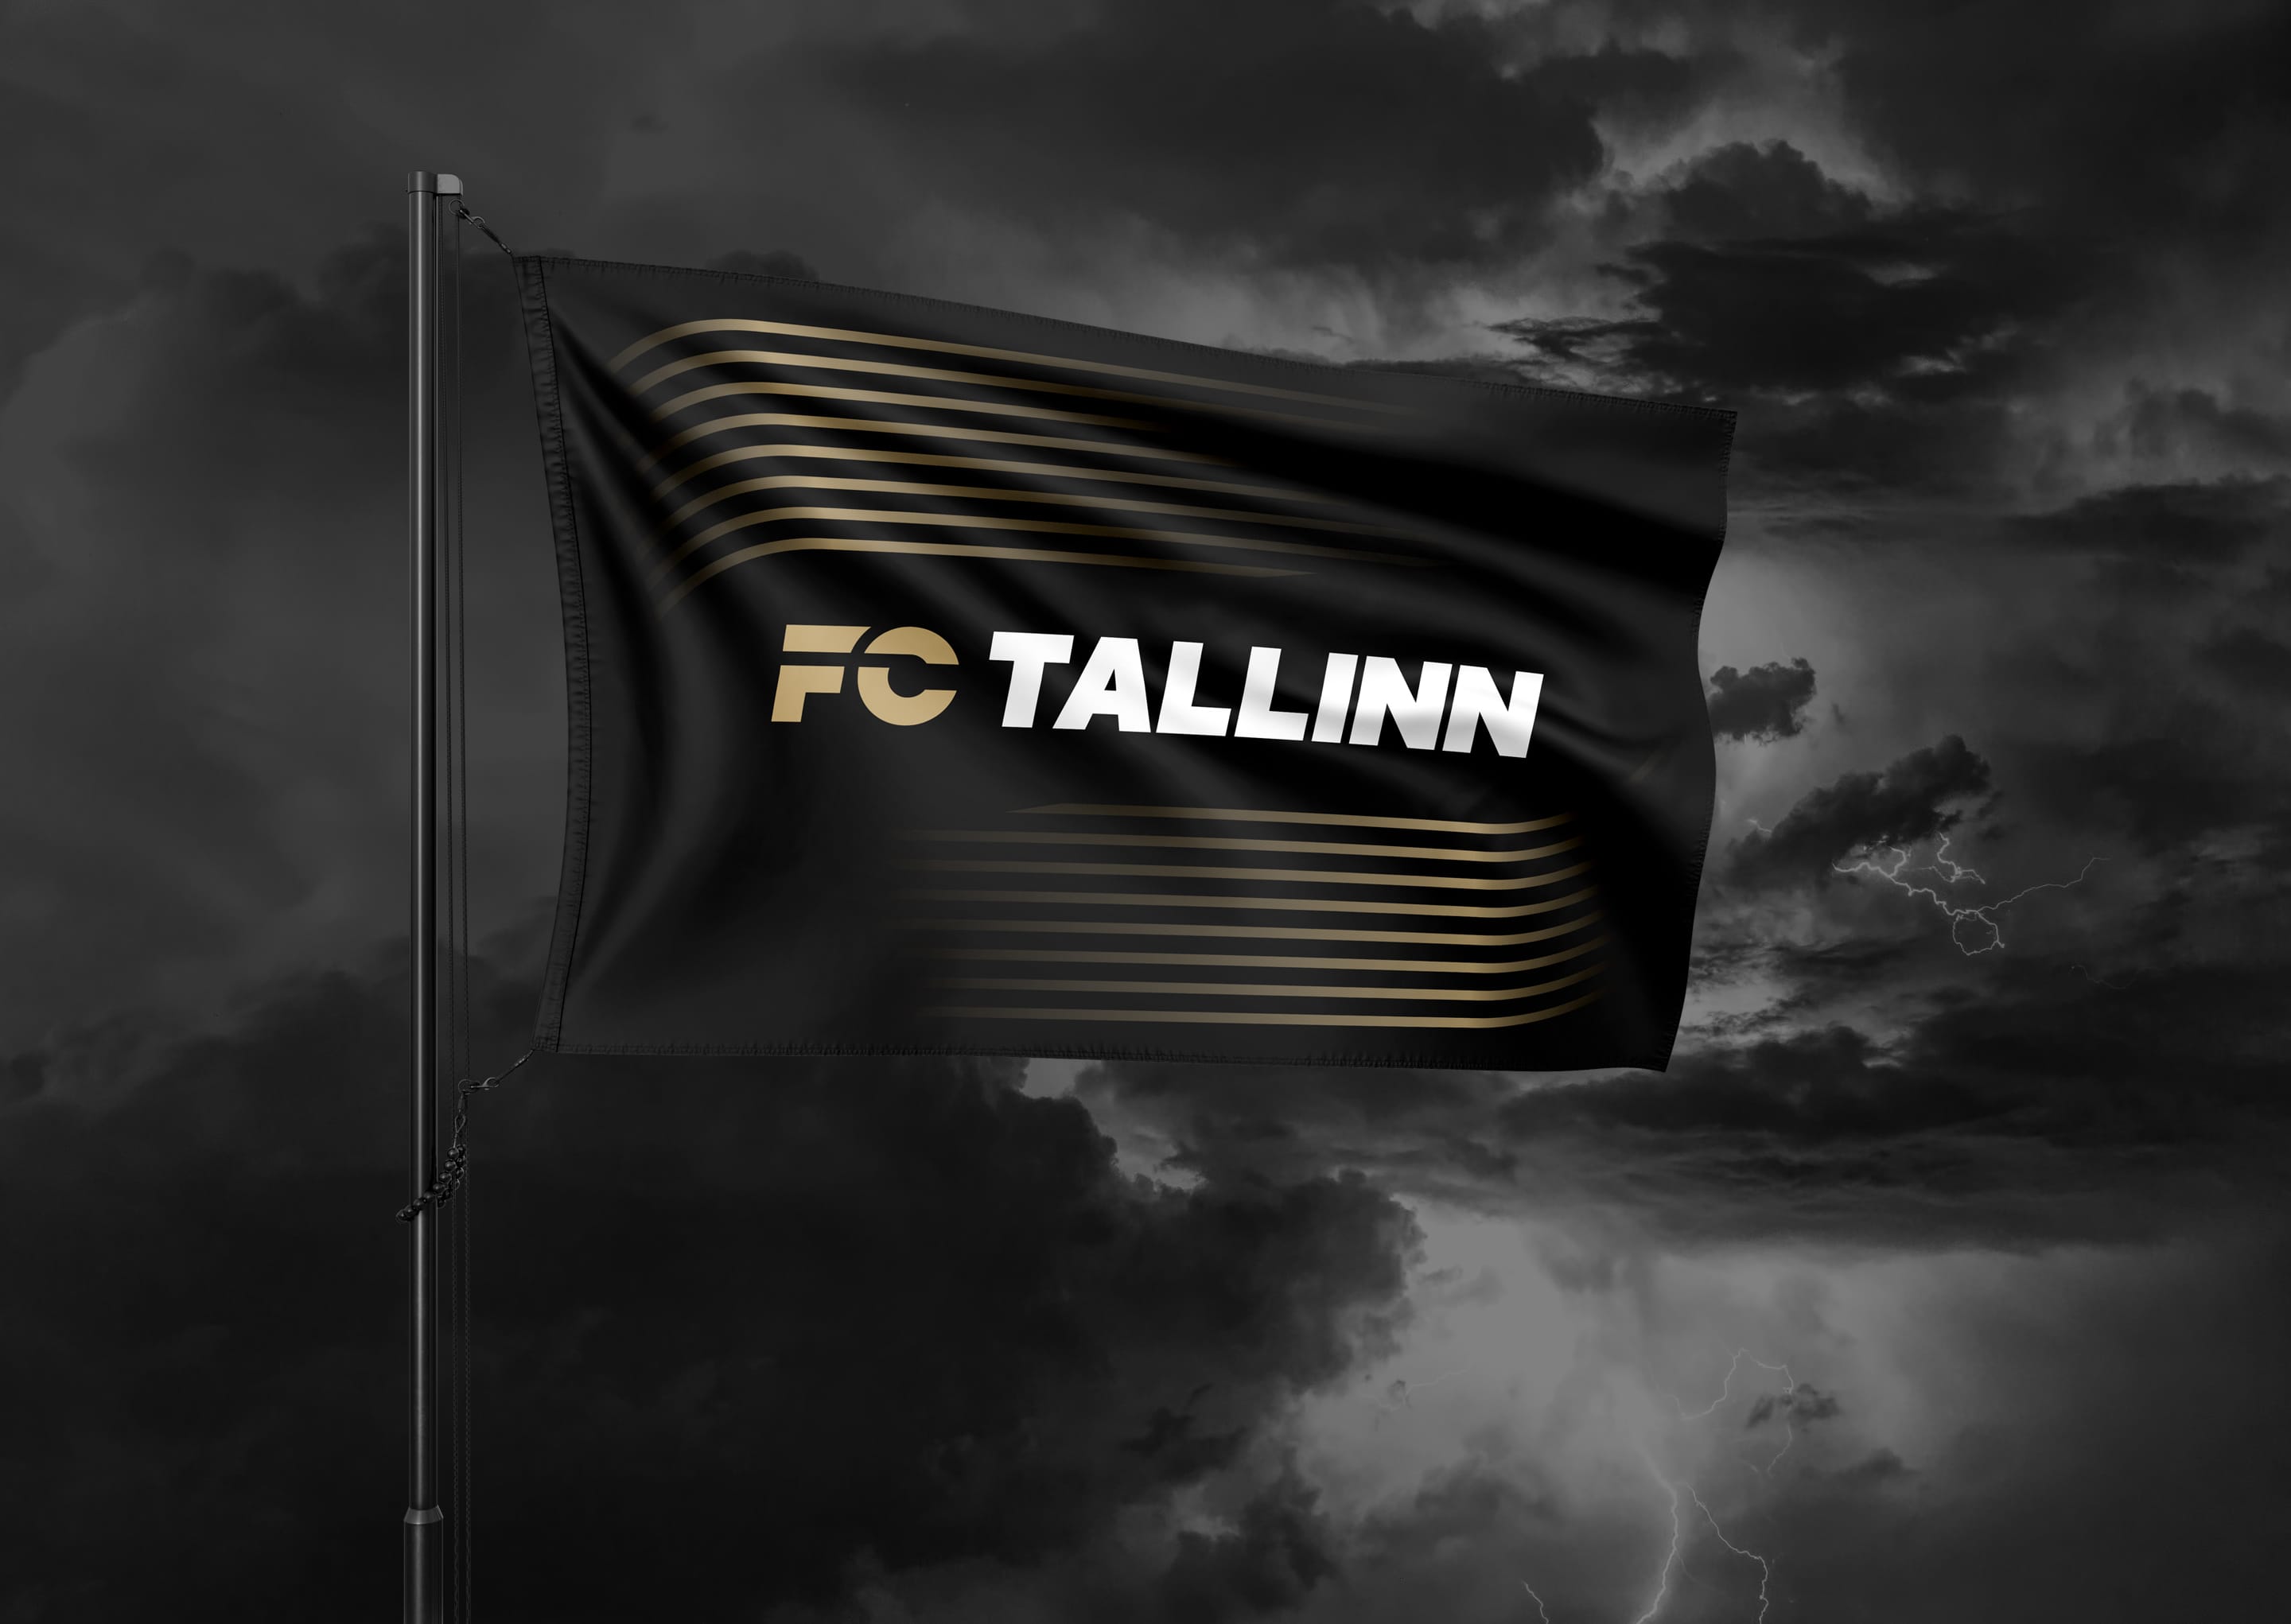 Flag Design for the Tallinn Football Club